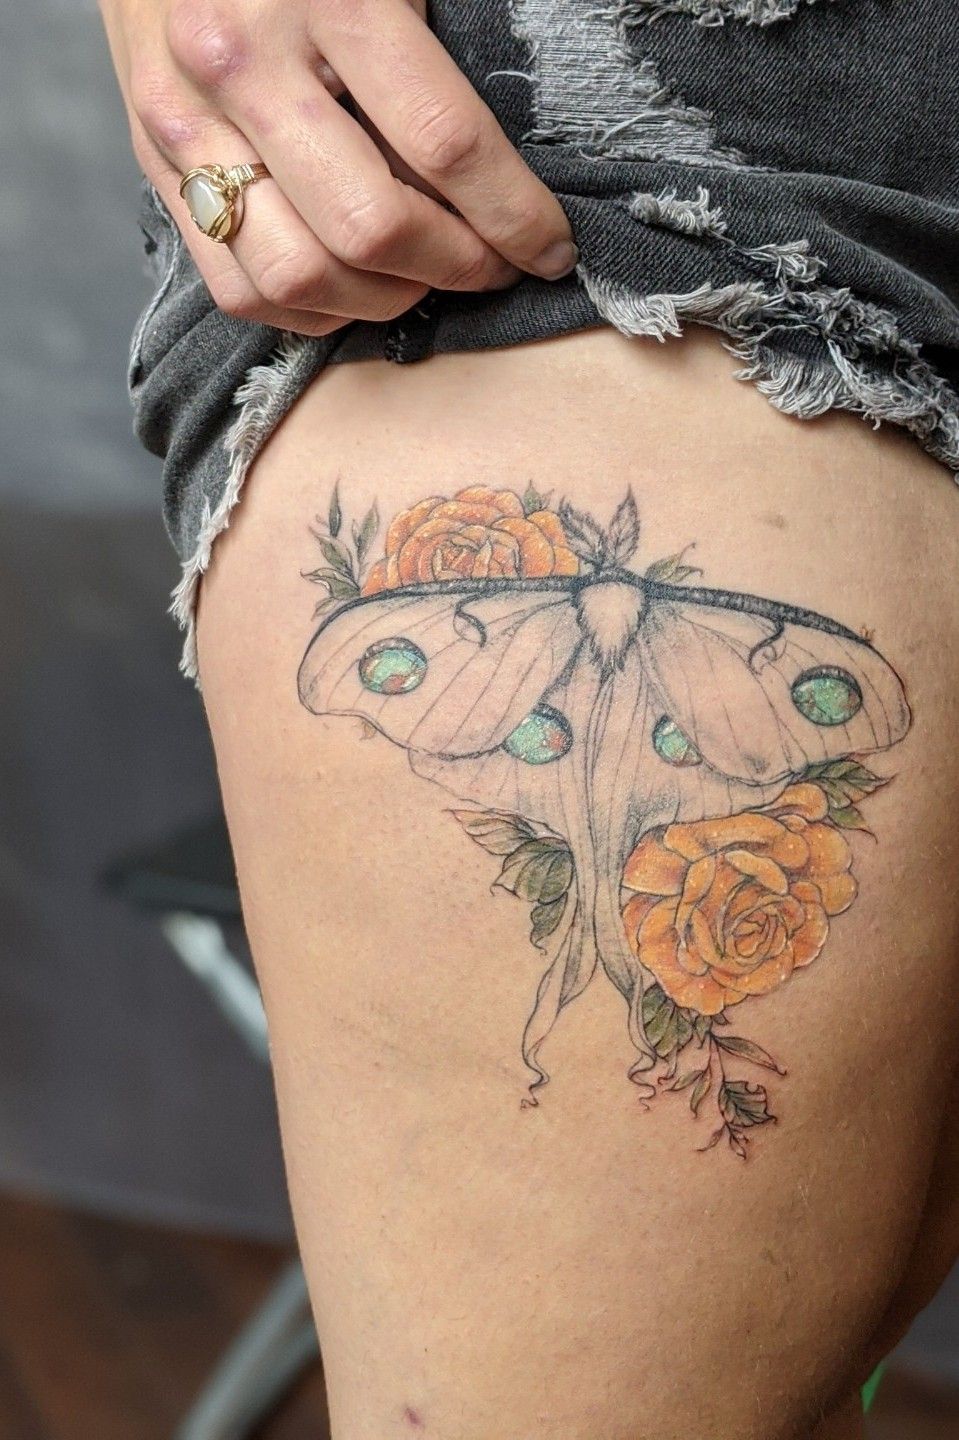 luna moth tattoo by mirmirstein on DeviantArt